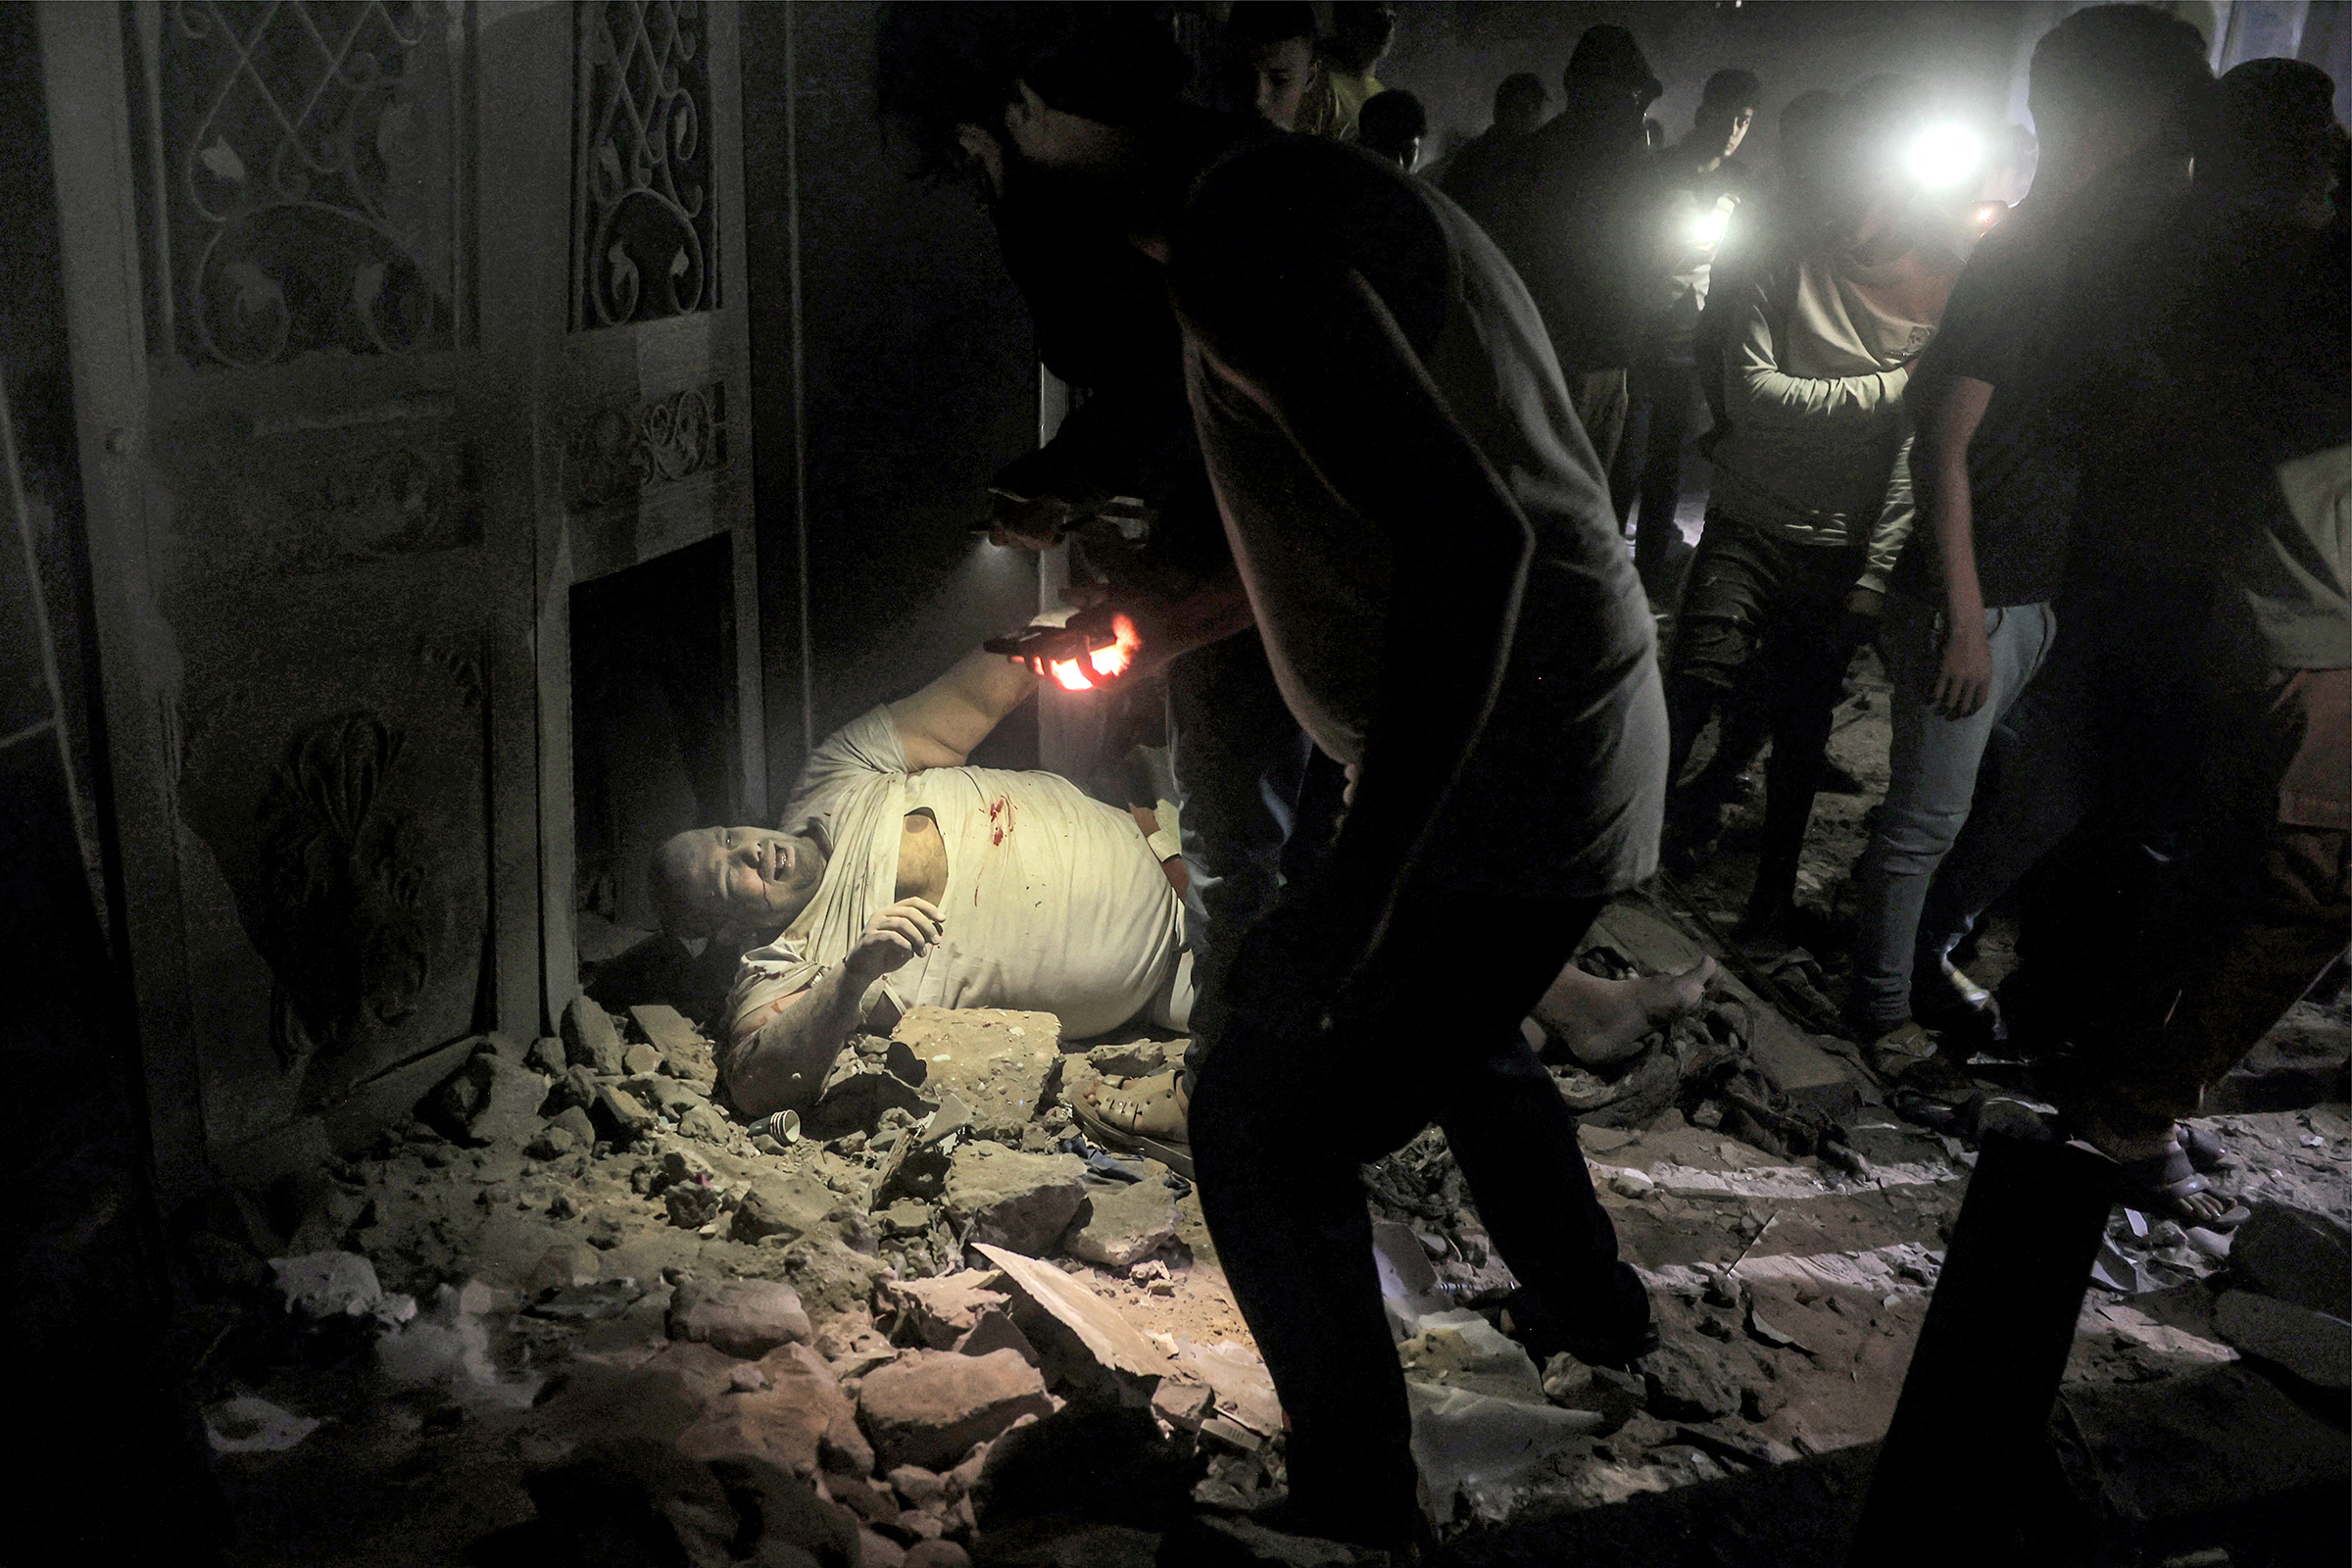 拉法赫南部加沙地带一处建筑被以色列轰炸后,一名受伤人员躺在碎片中,周围人举着手电筒。